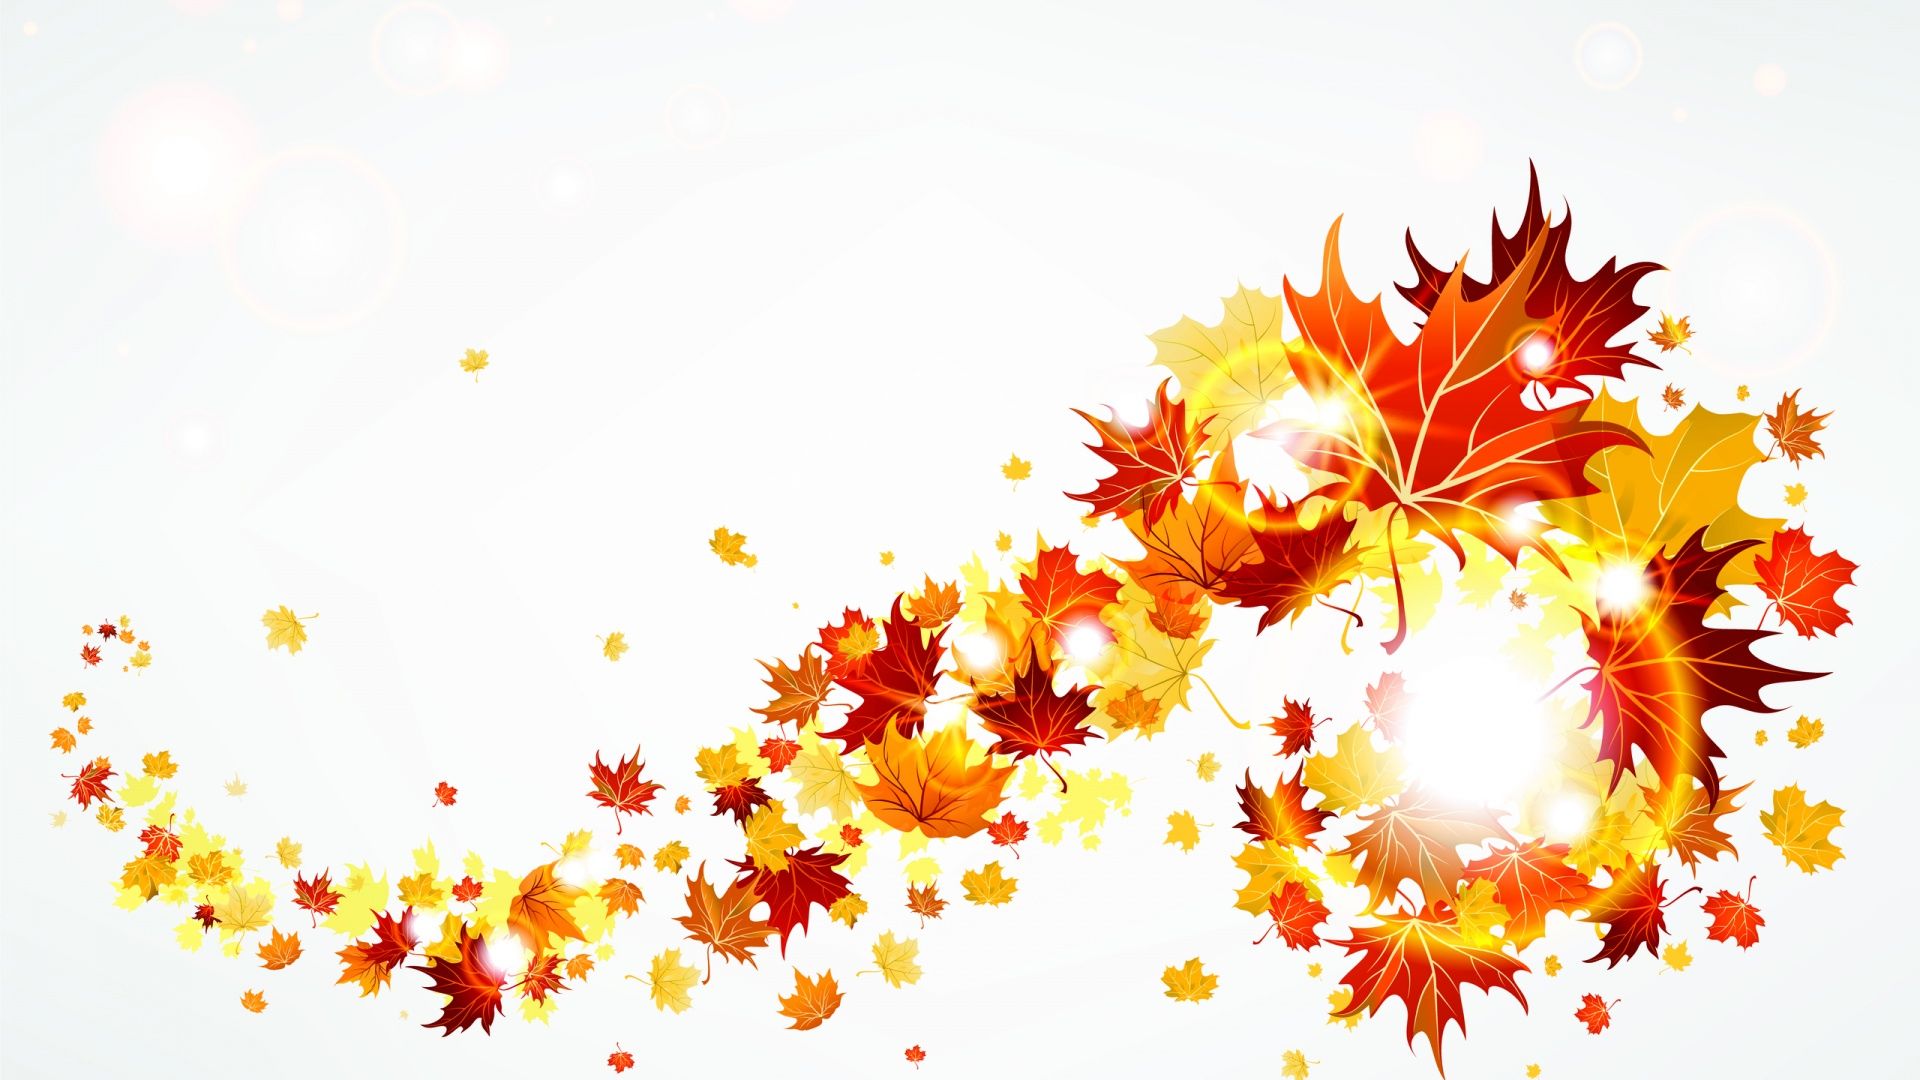 Fall Leaves Beautiful Autumn 3 Image Clipart